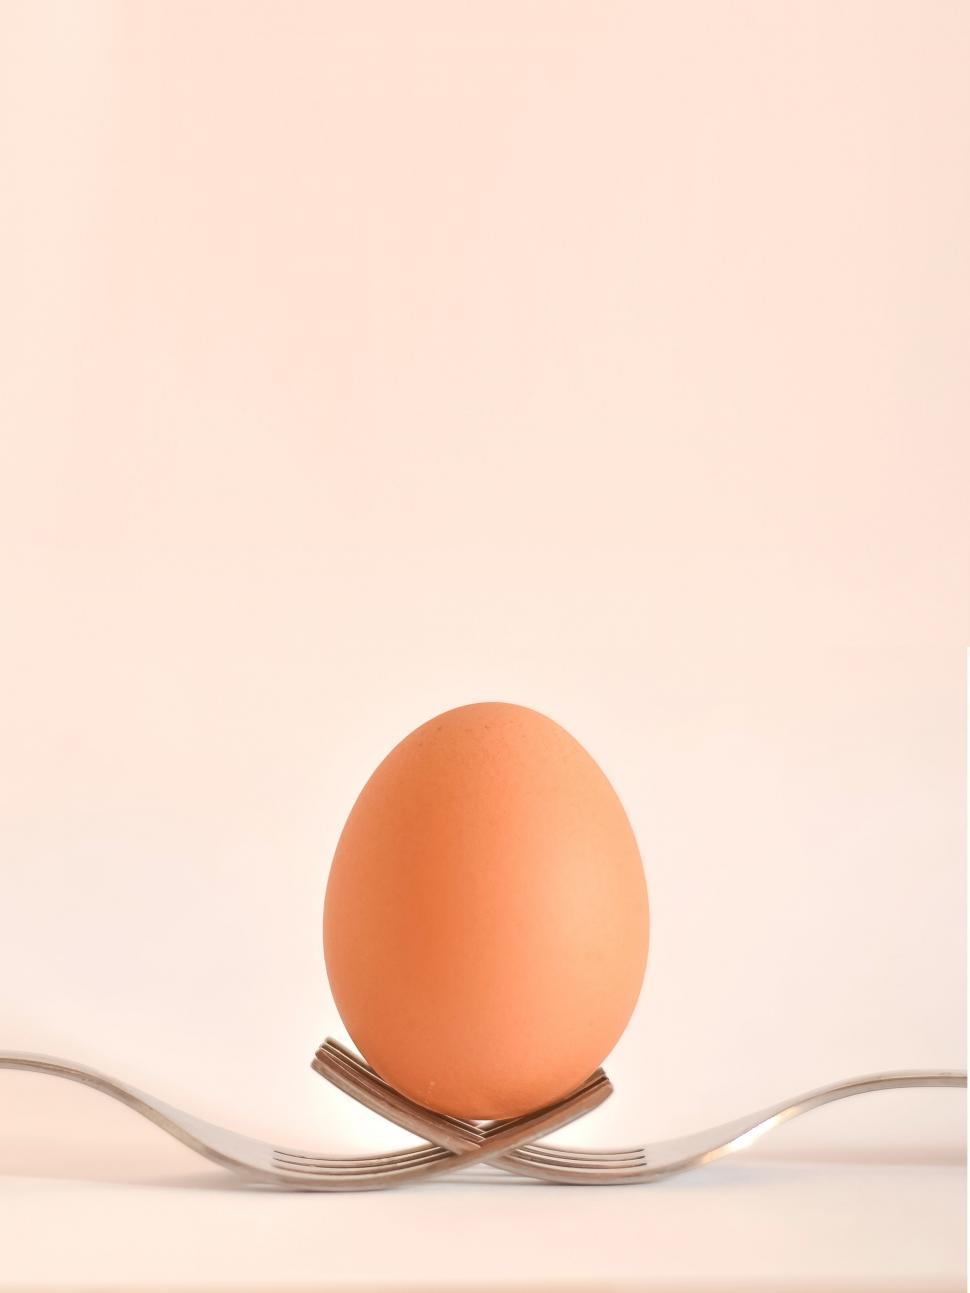 Free Image of Egg on forks 